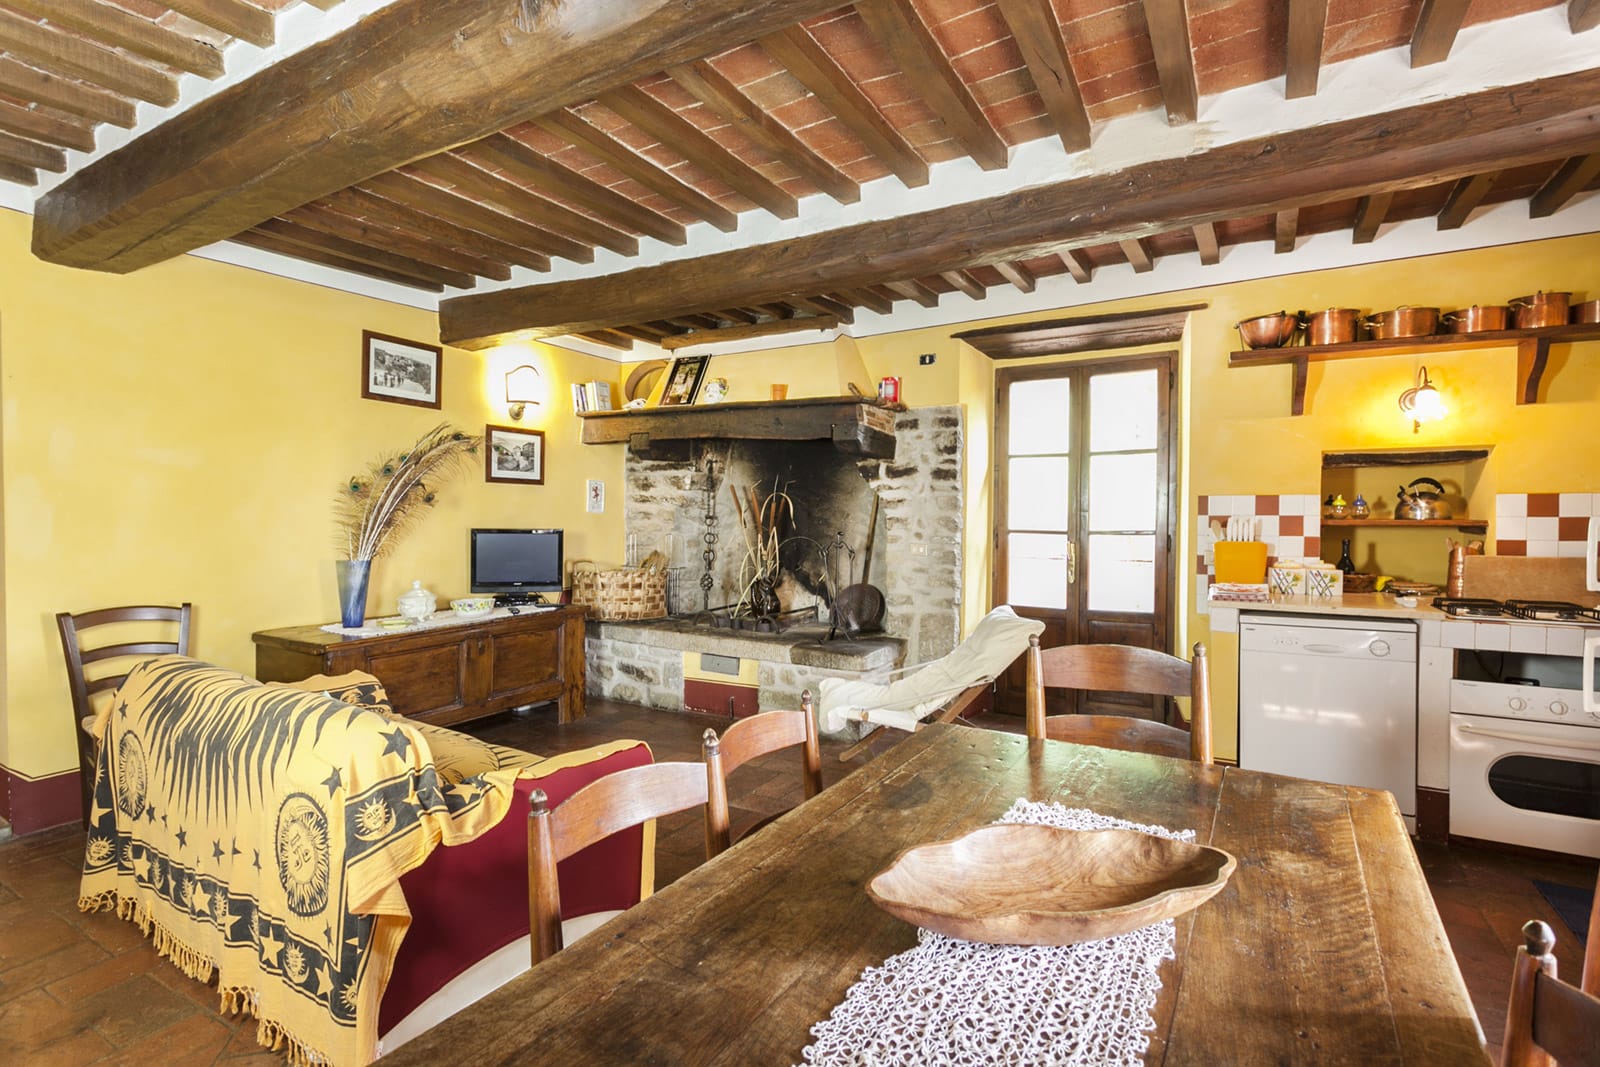 Casa Fontelunga: our villas in Cortona | Fontelunga farmhouse